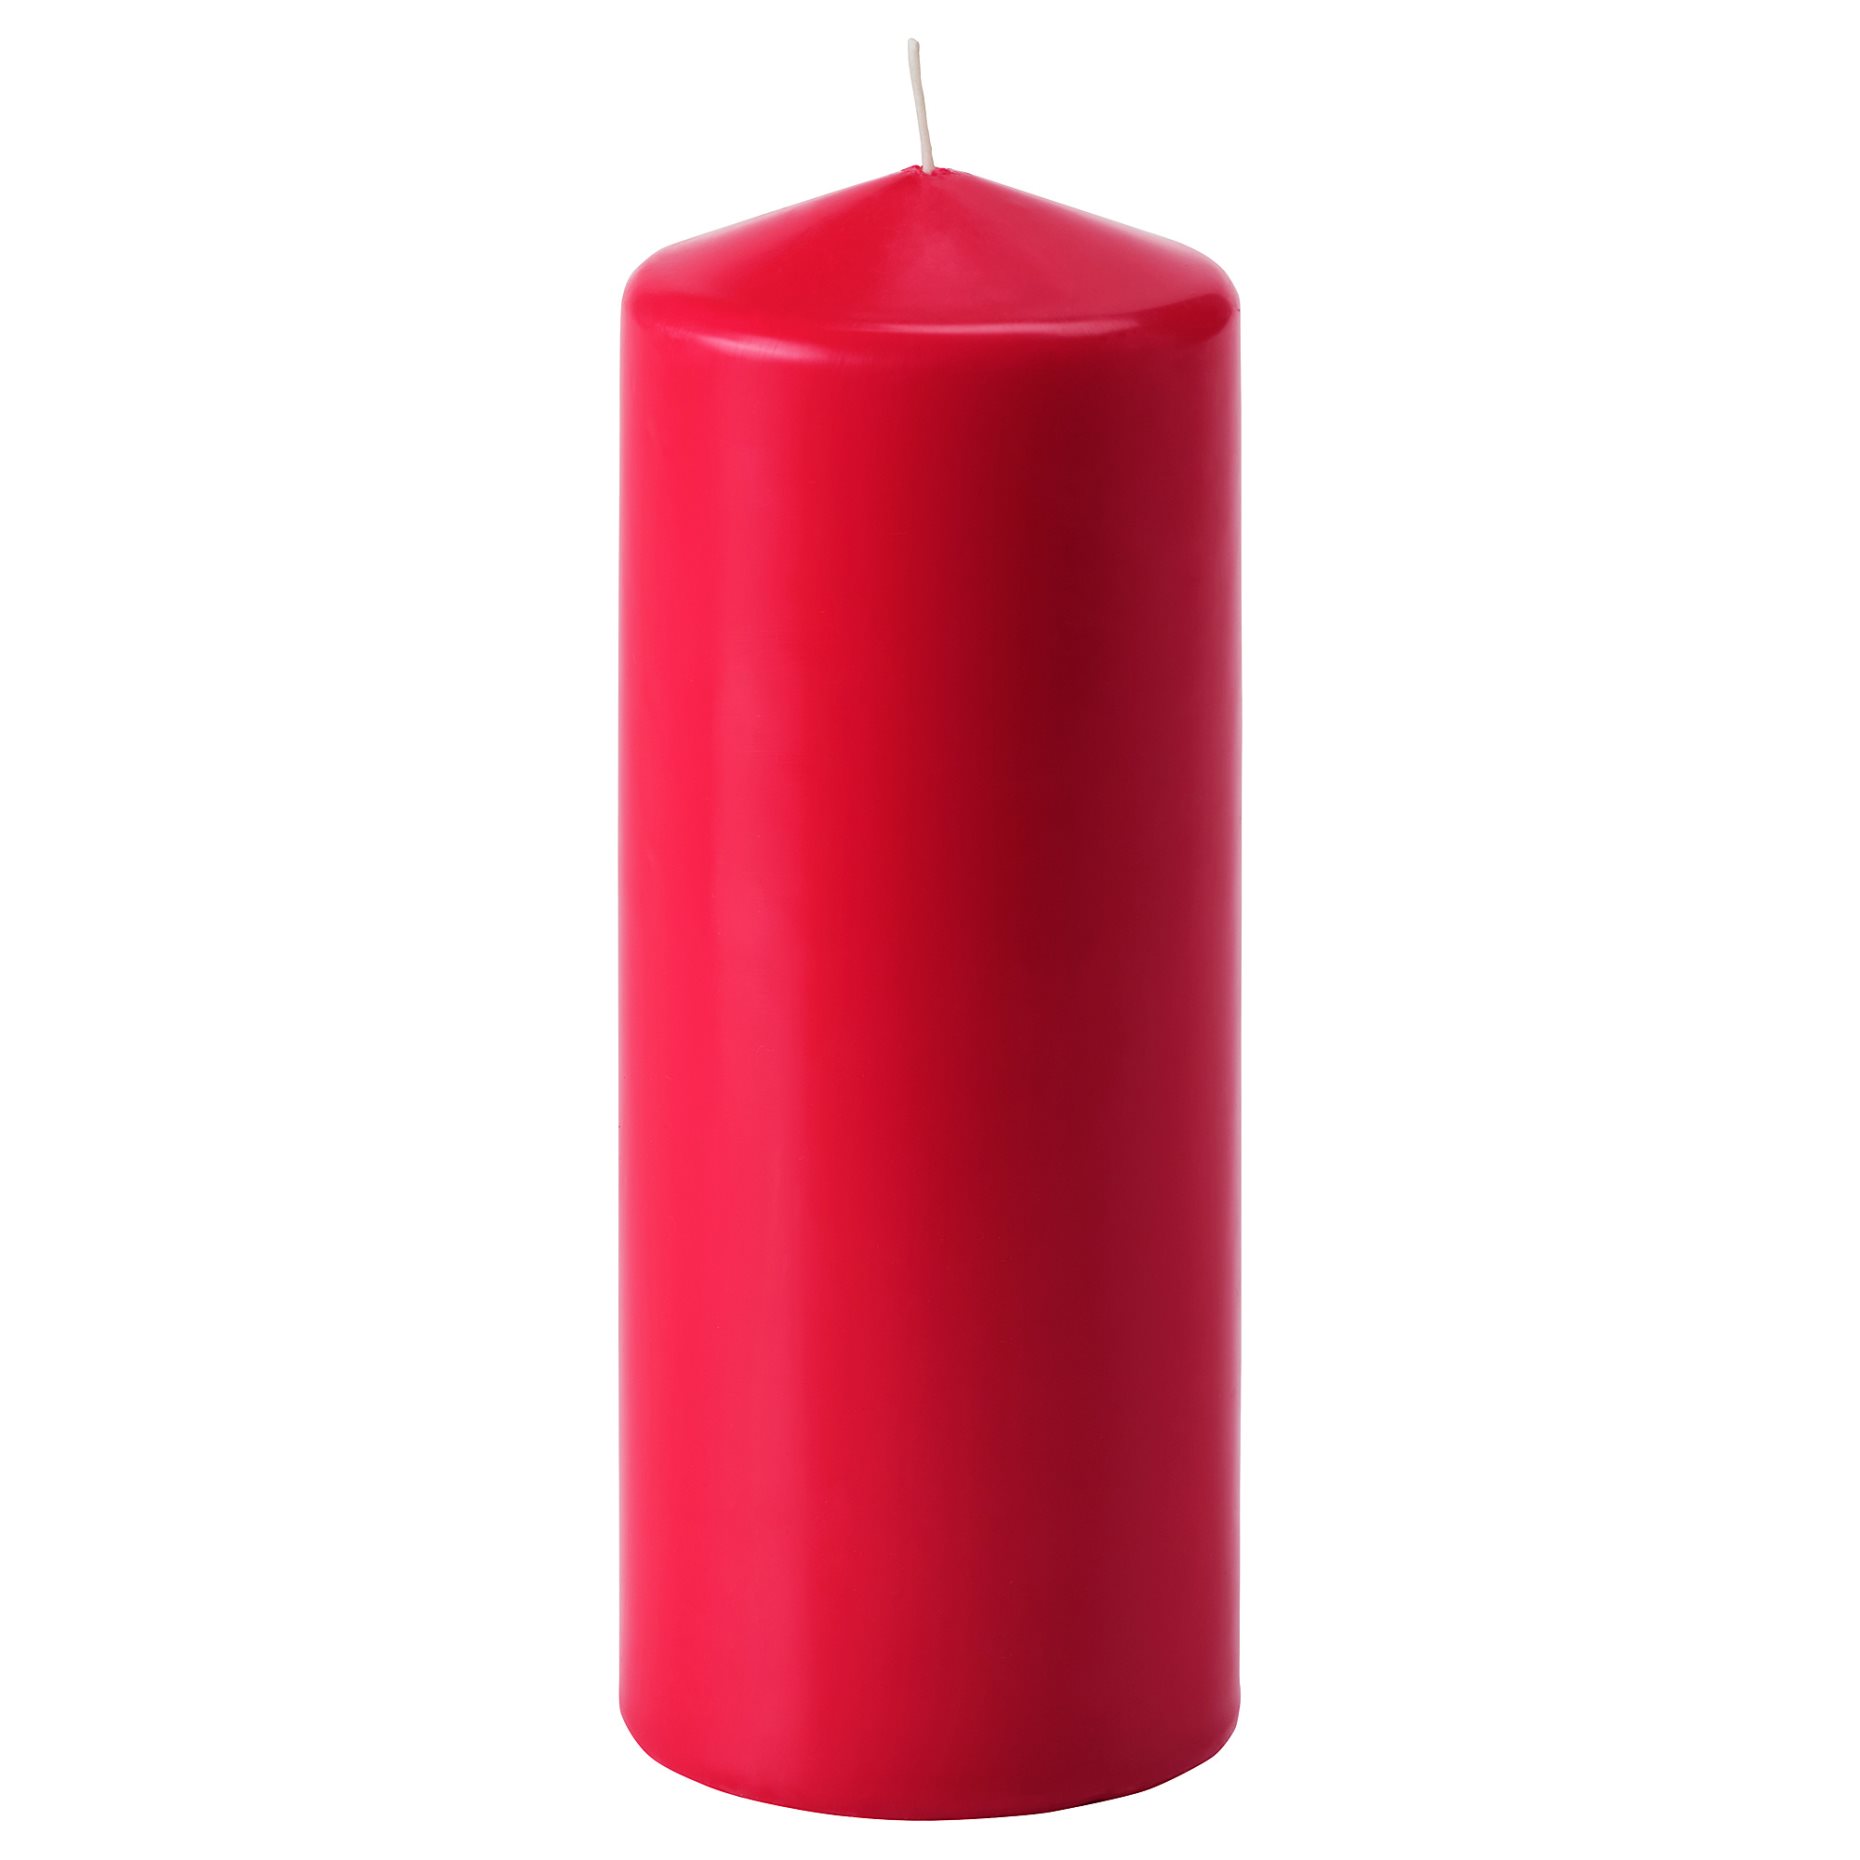 VINTERFEST, unscented block candle, 104.276.91